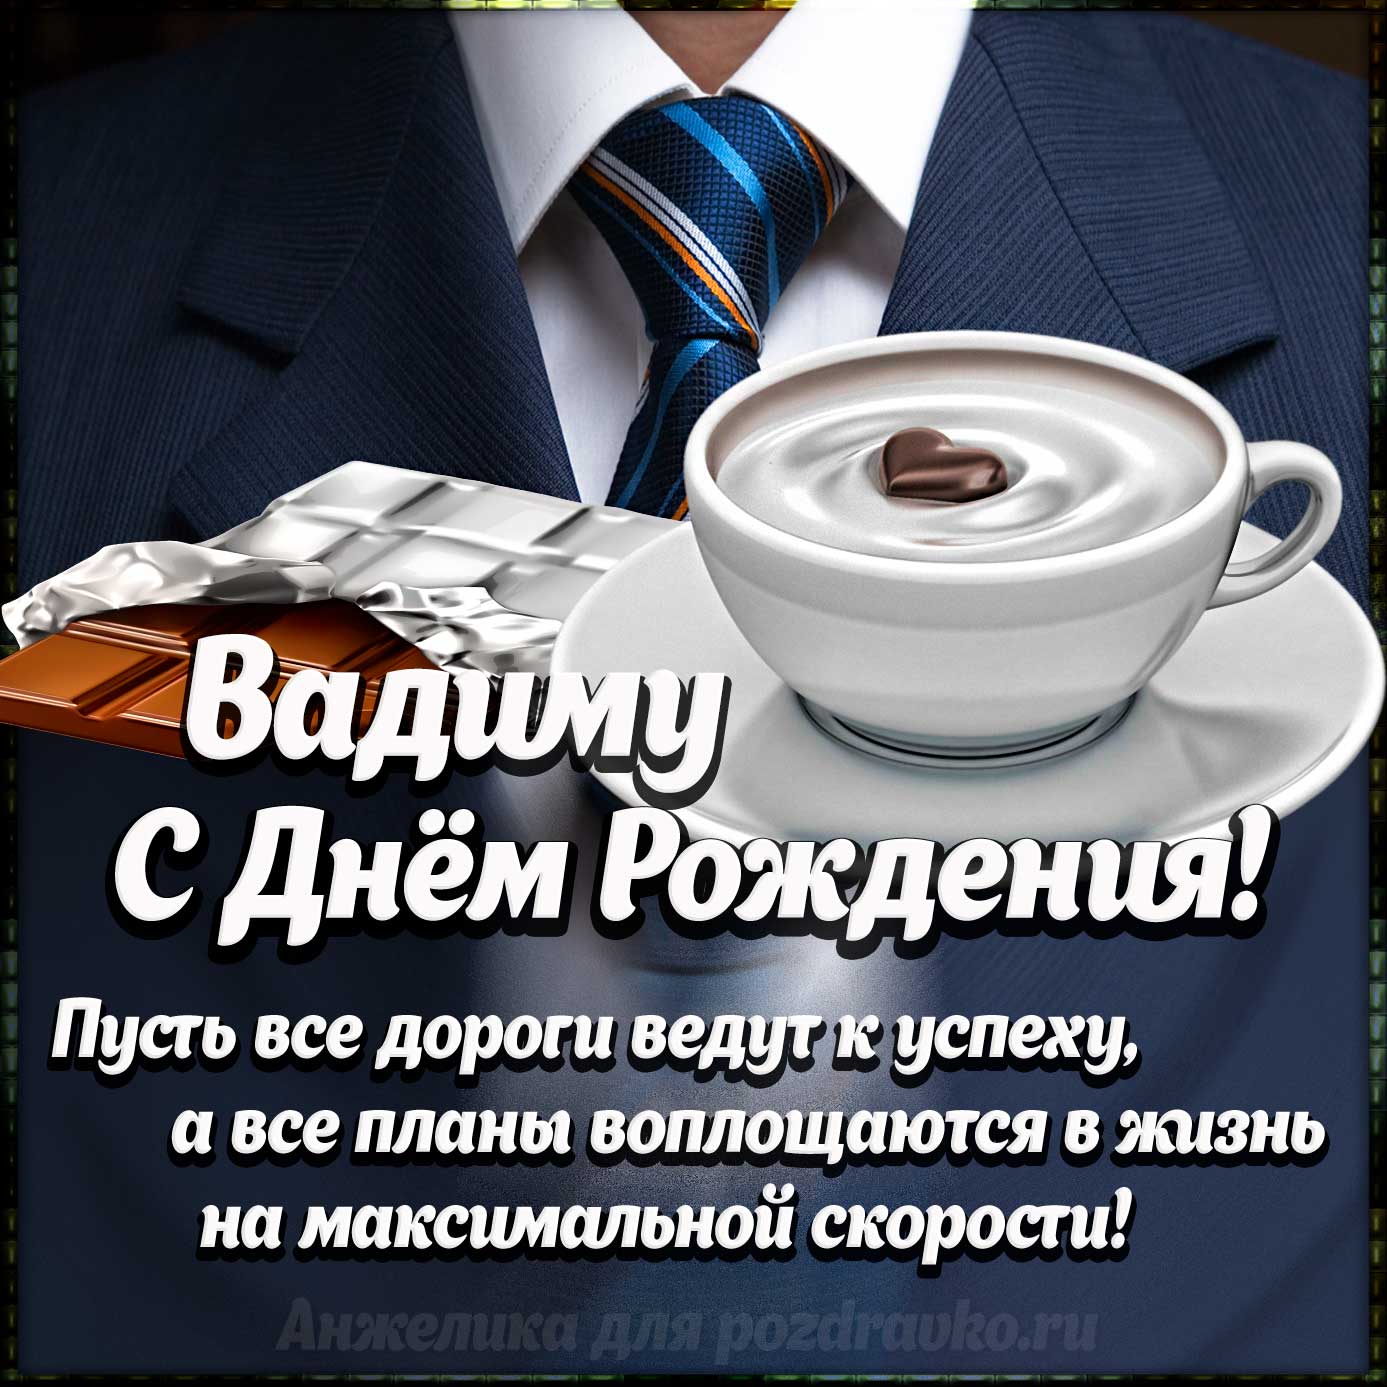 Открытка - Вадиму с Днем Рождения с галстуком, кофе и пожеланием. Скачать бесплатно или отправить картинку.